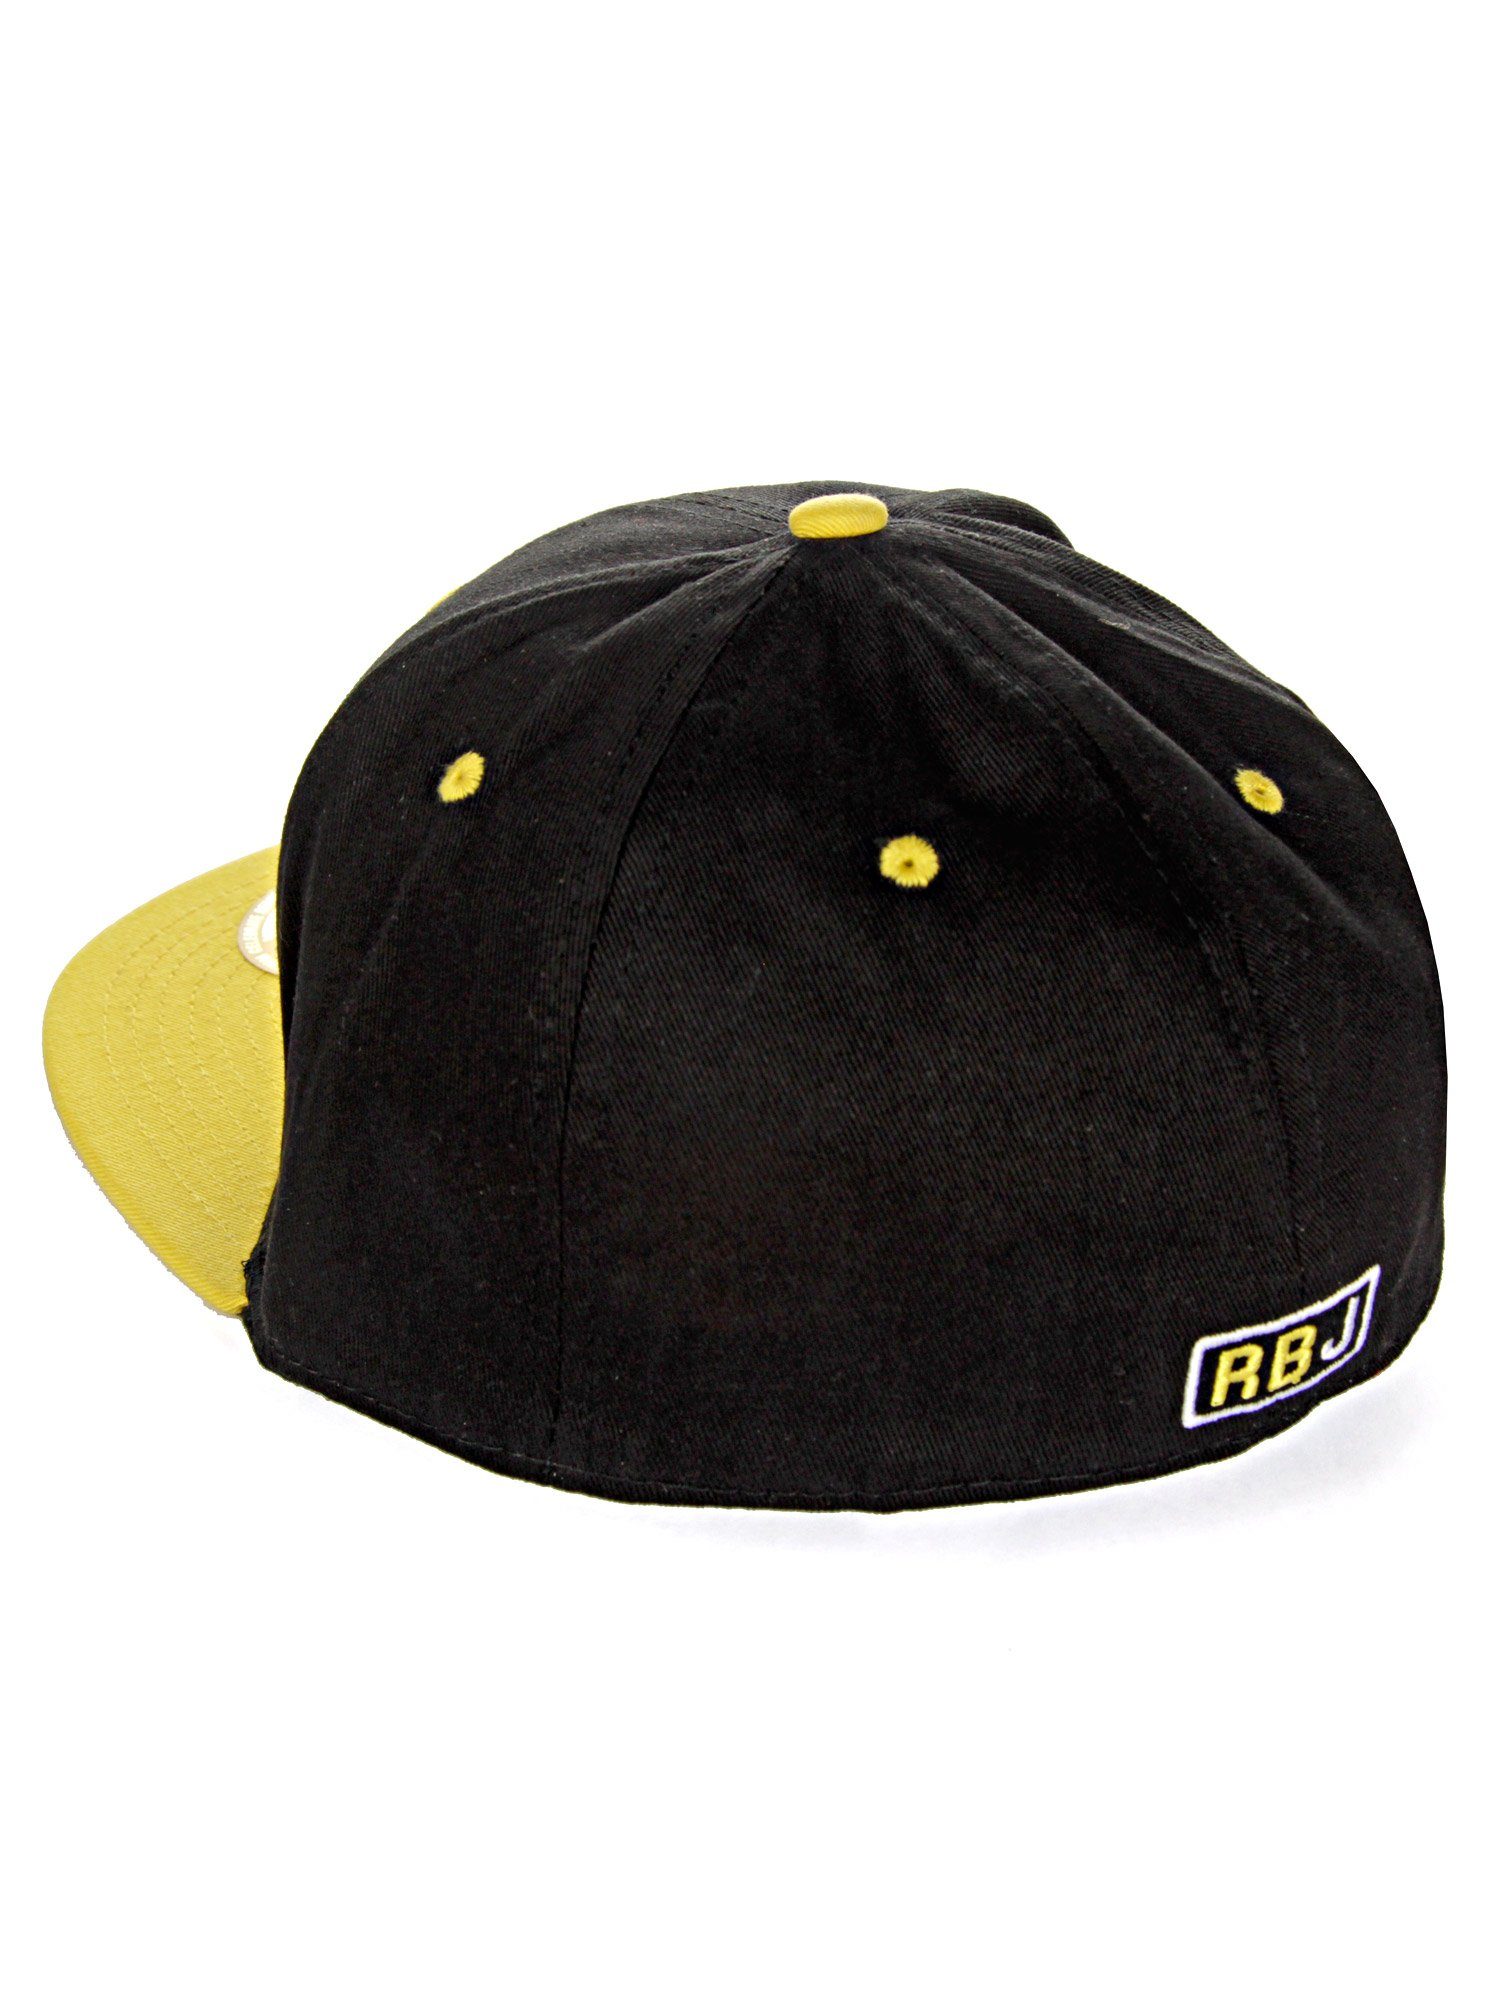 RedBridge Baseball Cap Durham Schirm mit kontrastfarbigem schwarz-gelb